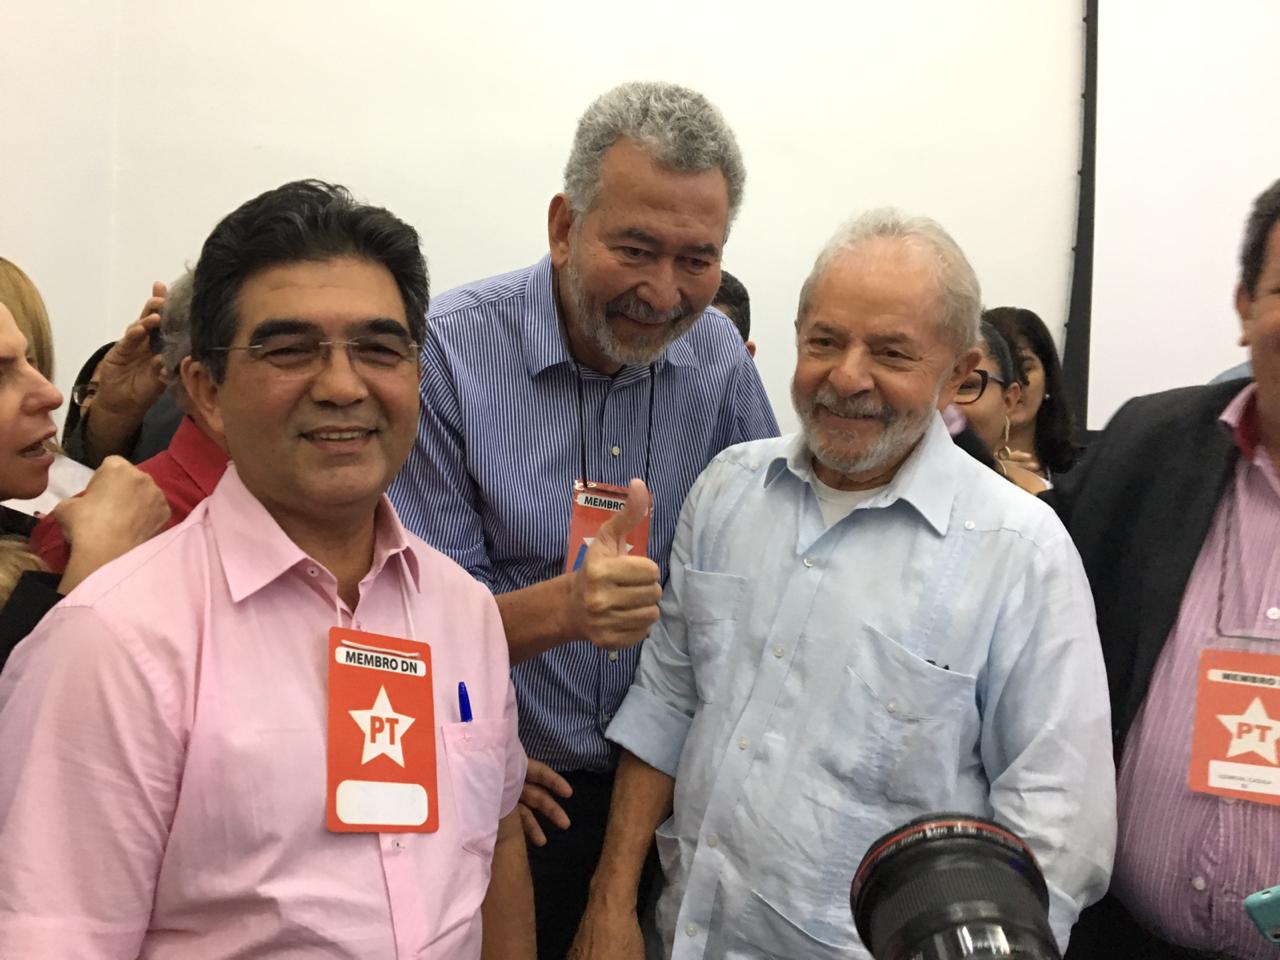 Limma com o ex-presidente Lula: sintonia política